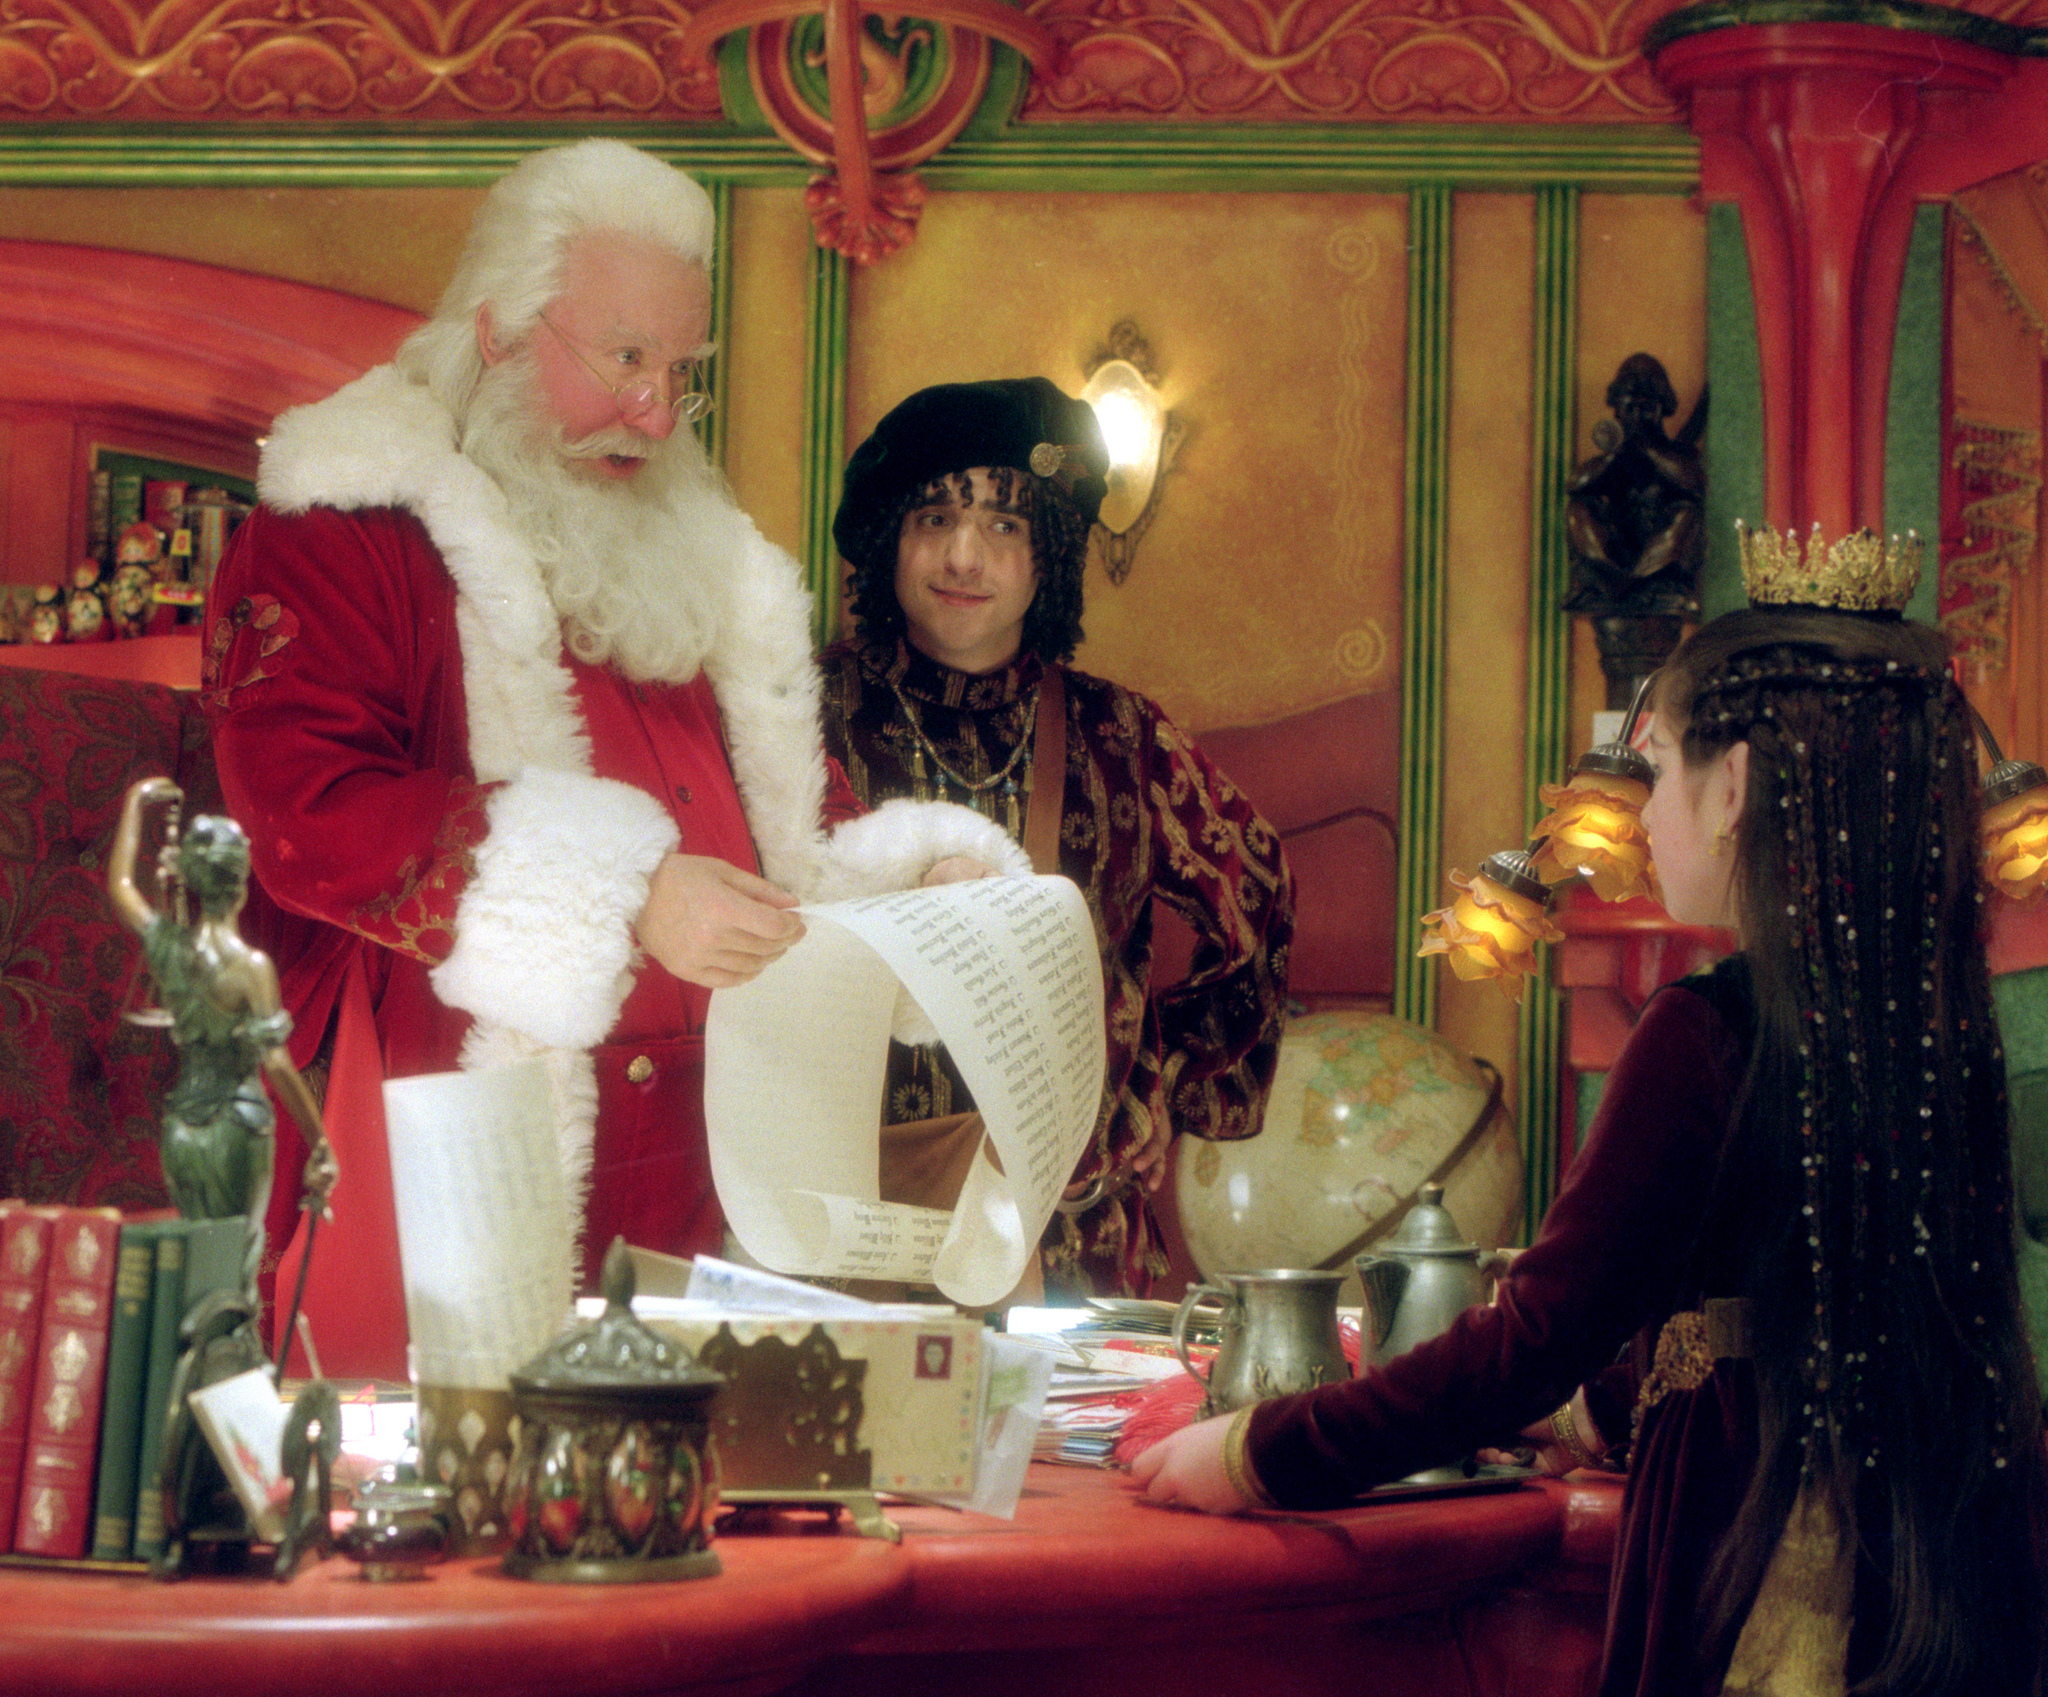 Still of Tim Allen and David Krumholtz in The Santa Clause 2 (2002)